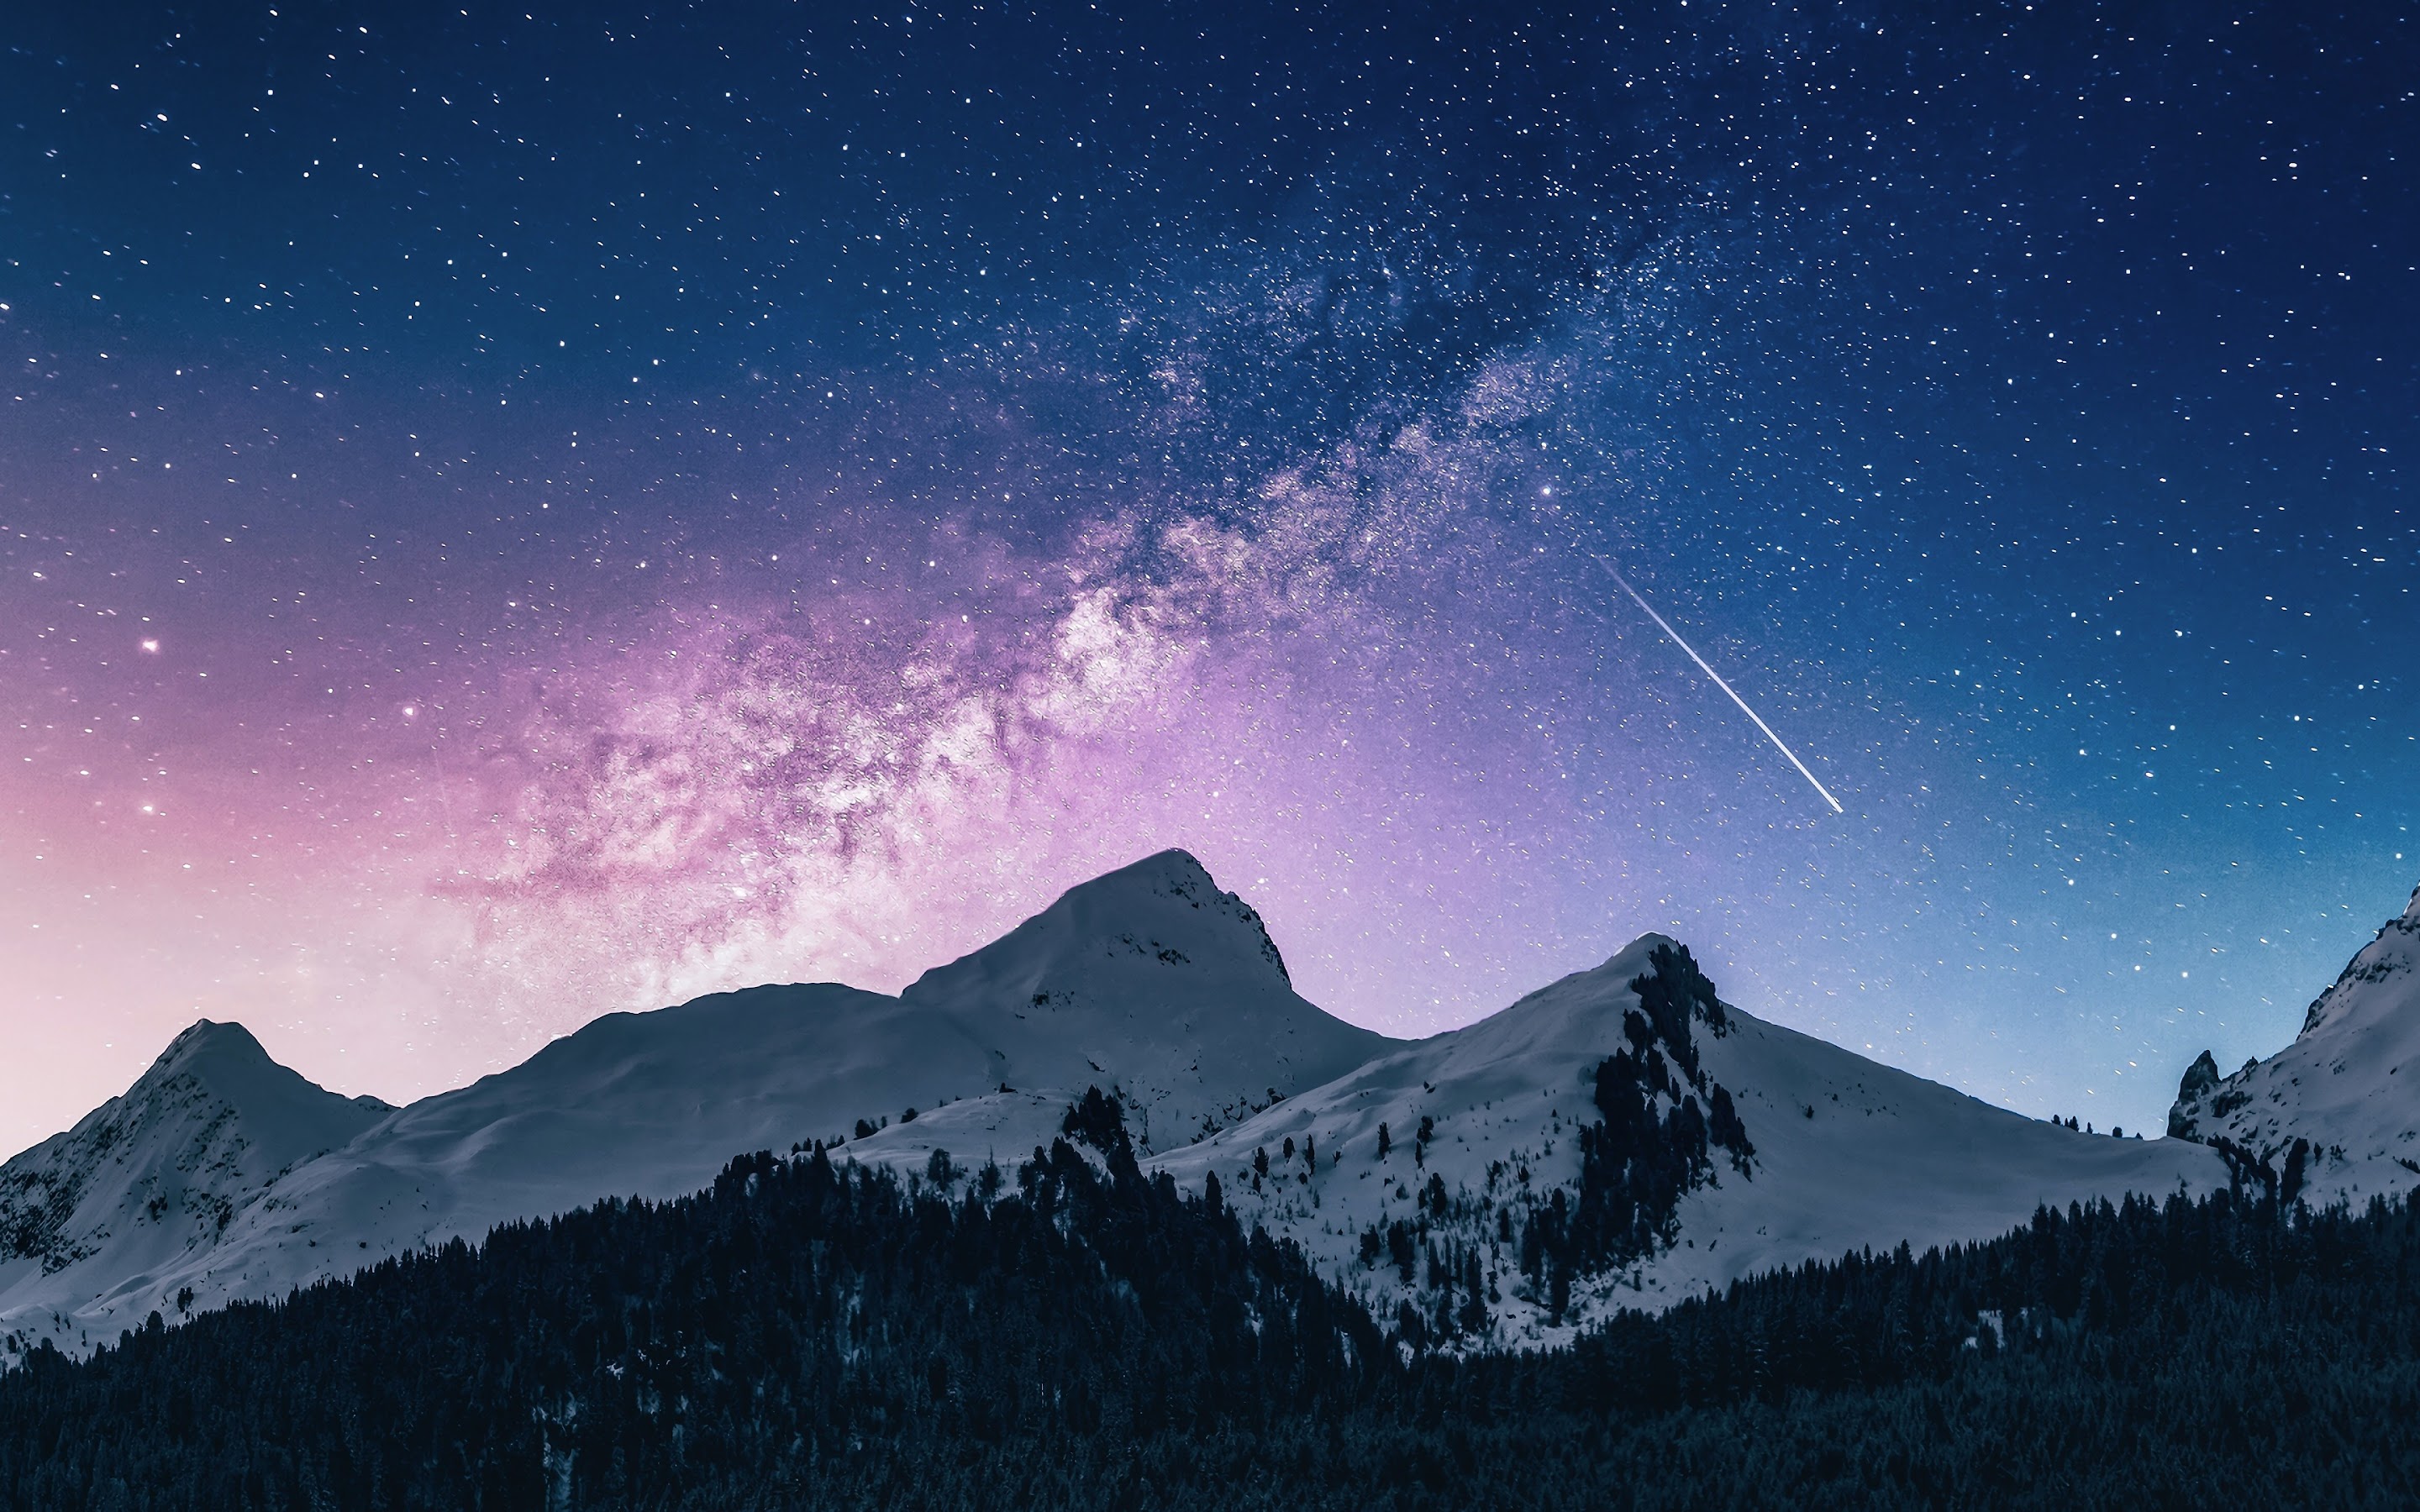 Núi non đón sao băng trên bầu trời đêm sẽ khiến bạn phải trầm trồ. Bất kỳ ai cũng sẽ cảm thấy thích thú trước bức ảnh đẹp như tranh vẽ này. Hãy dùng phông nền 4K trên thiết bị của bạn để cùng khám phá vẻ đẹp cuốn hút này.